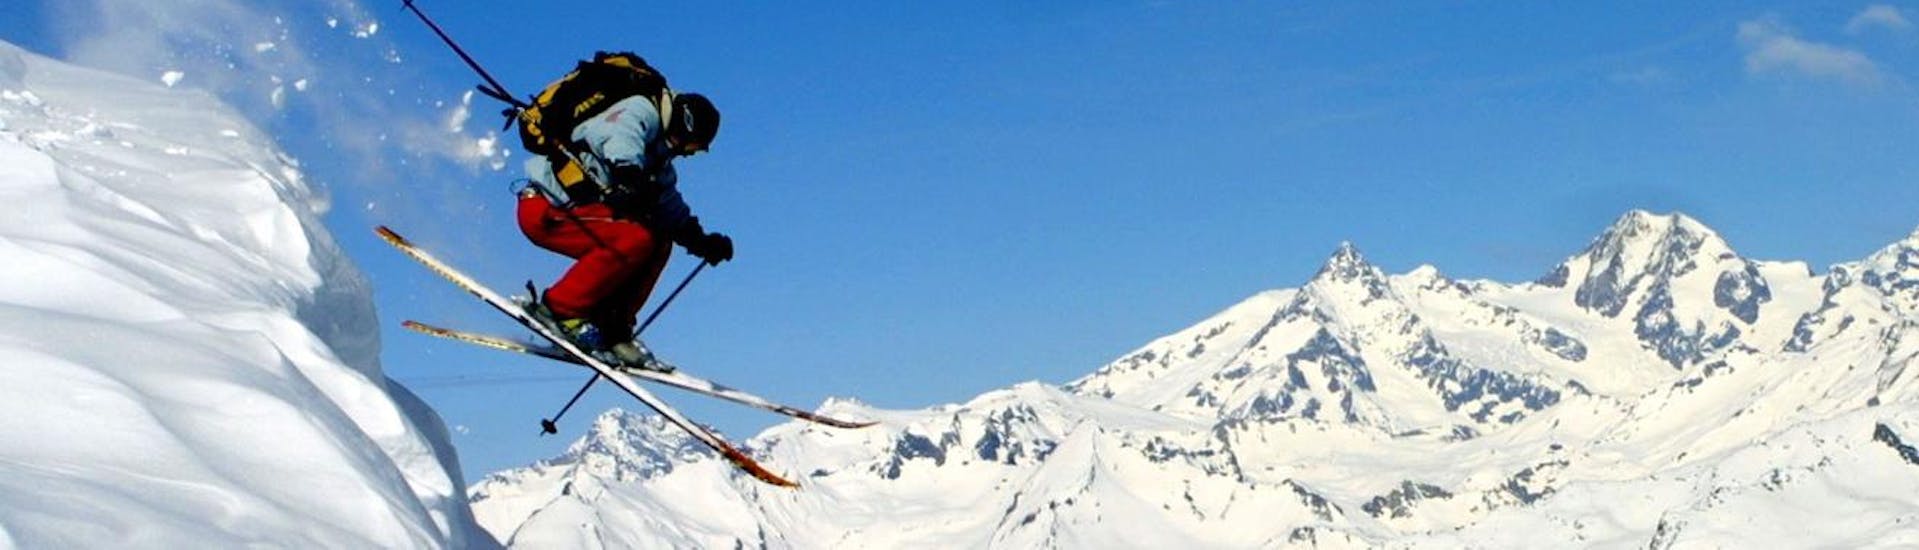 Un skieur fait un saut durant son Cours particulier de ski pour Adultes - Tous niveaux avec l'école de ski Snocool.